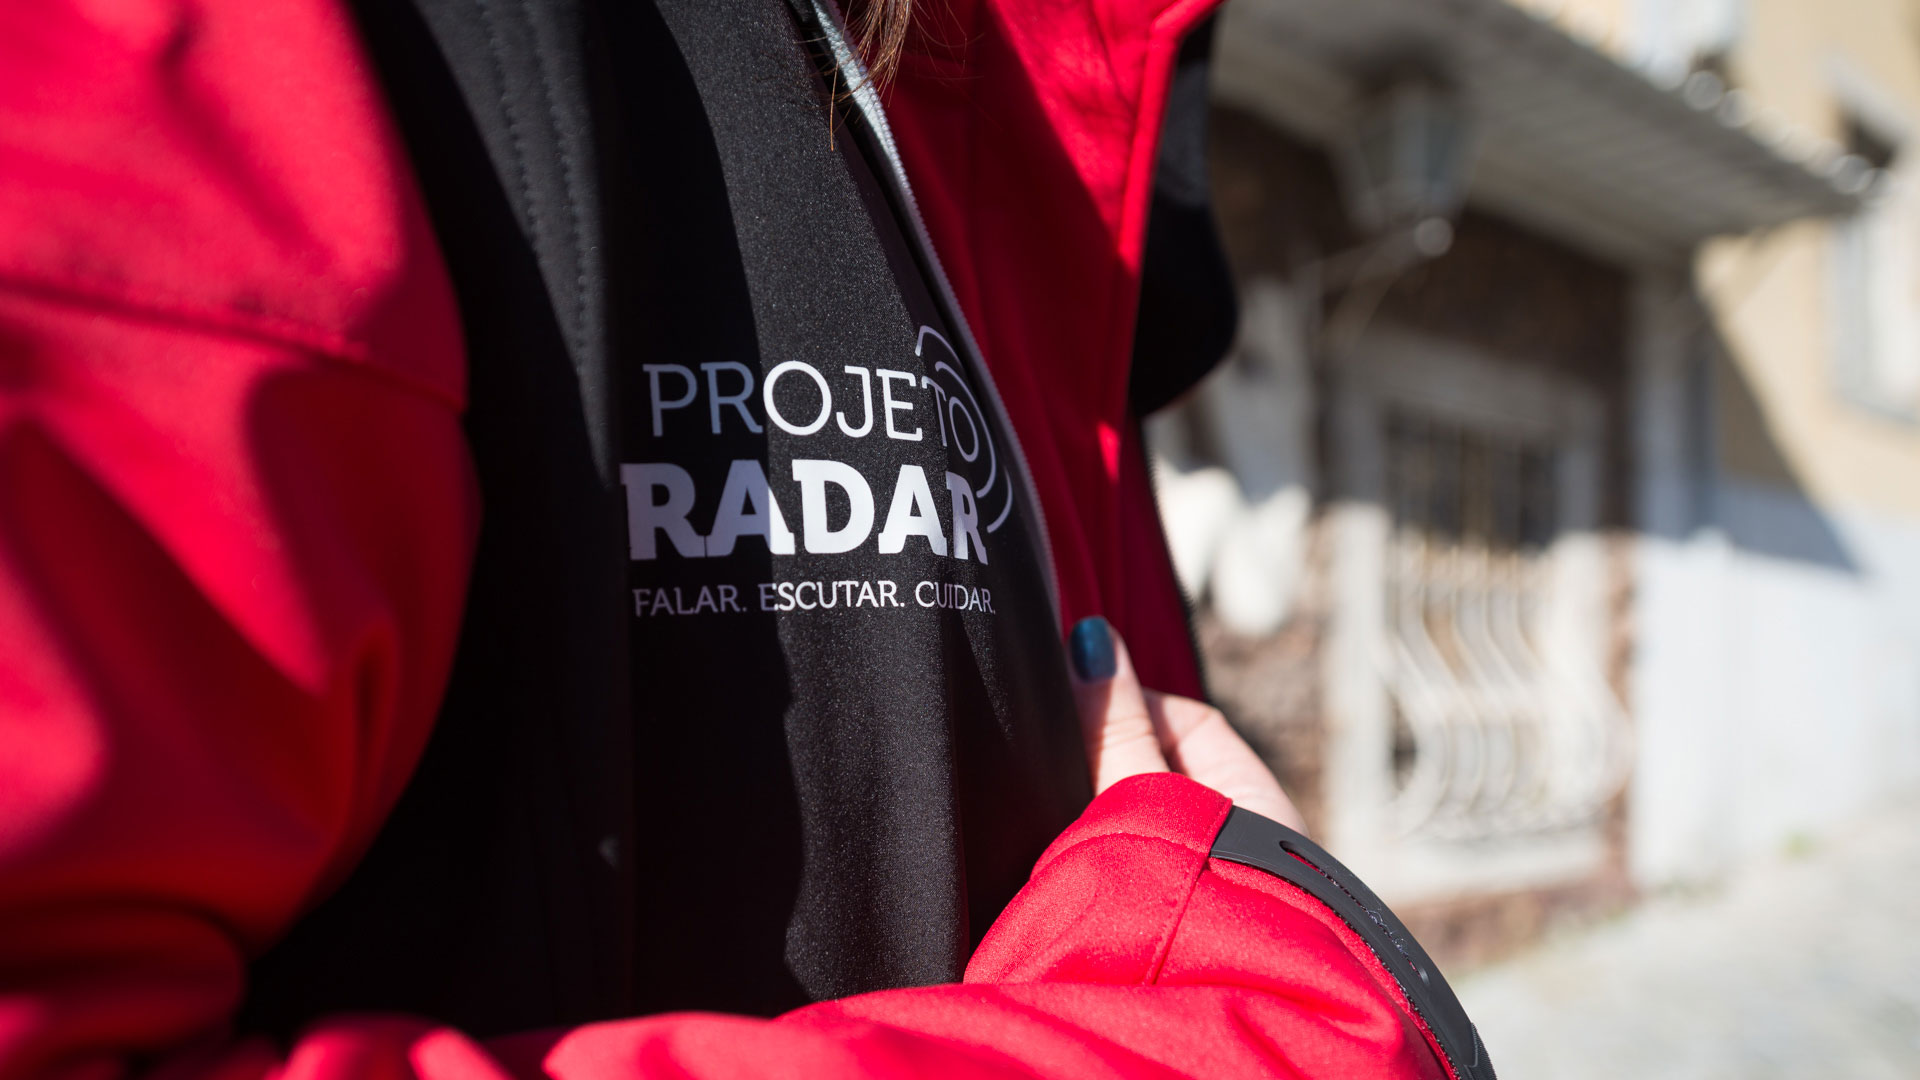 colete com o logotipo do projeto radar